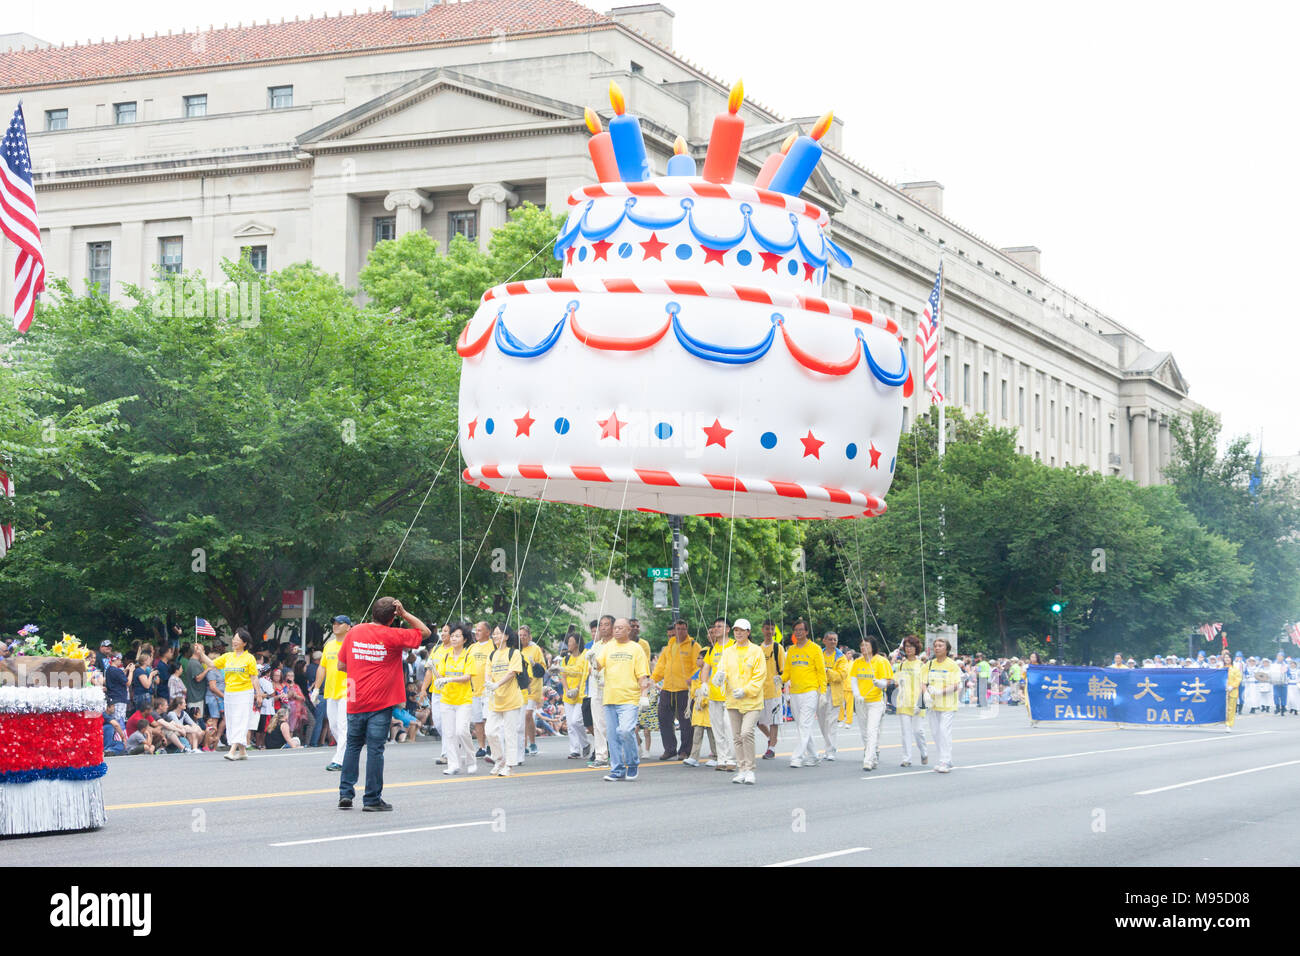 Washington, D.C., USA - 4 juillet 2016, le jour de l'indépendance nationale est la parade Parade du 4 juillet dans la capitale des États-Unis, il comm Banque D'Images